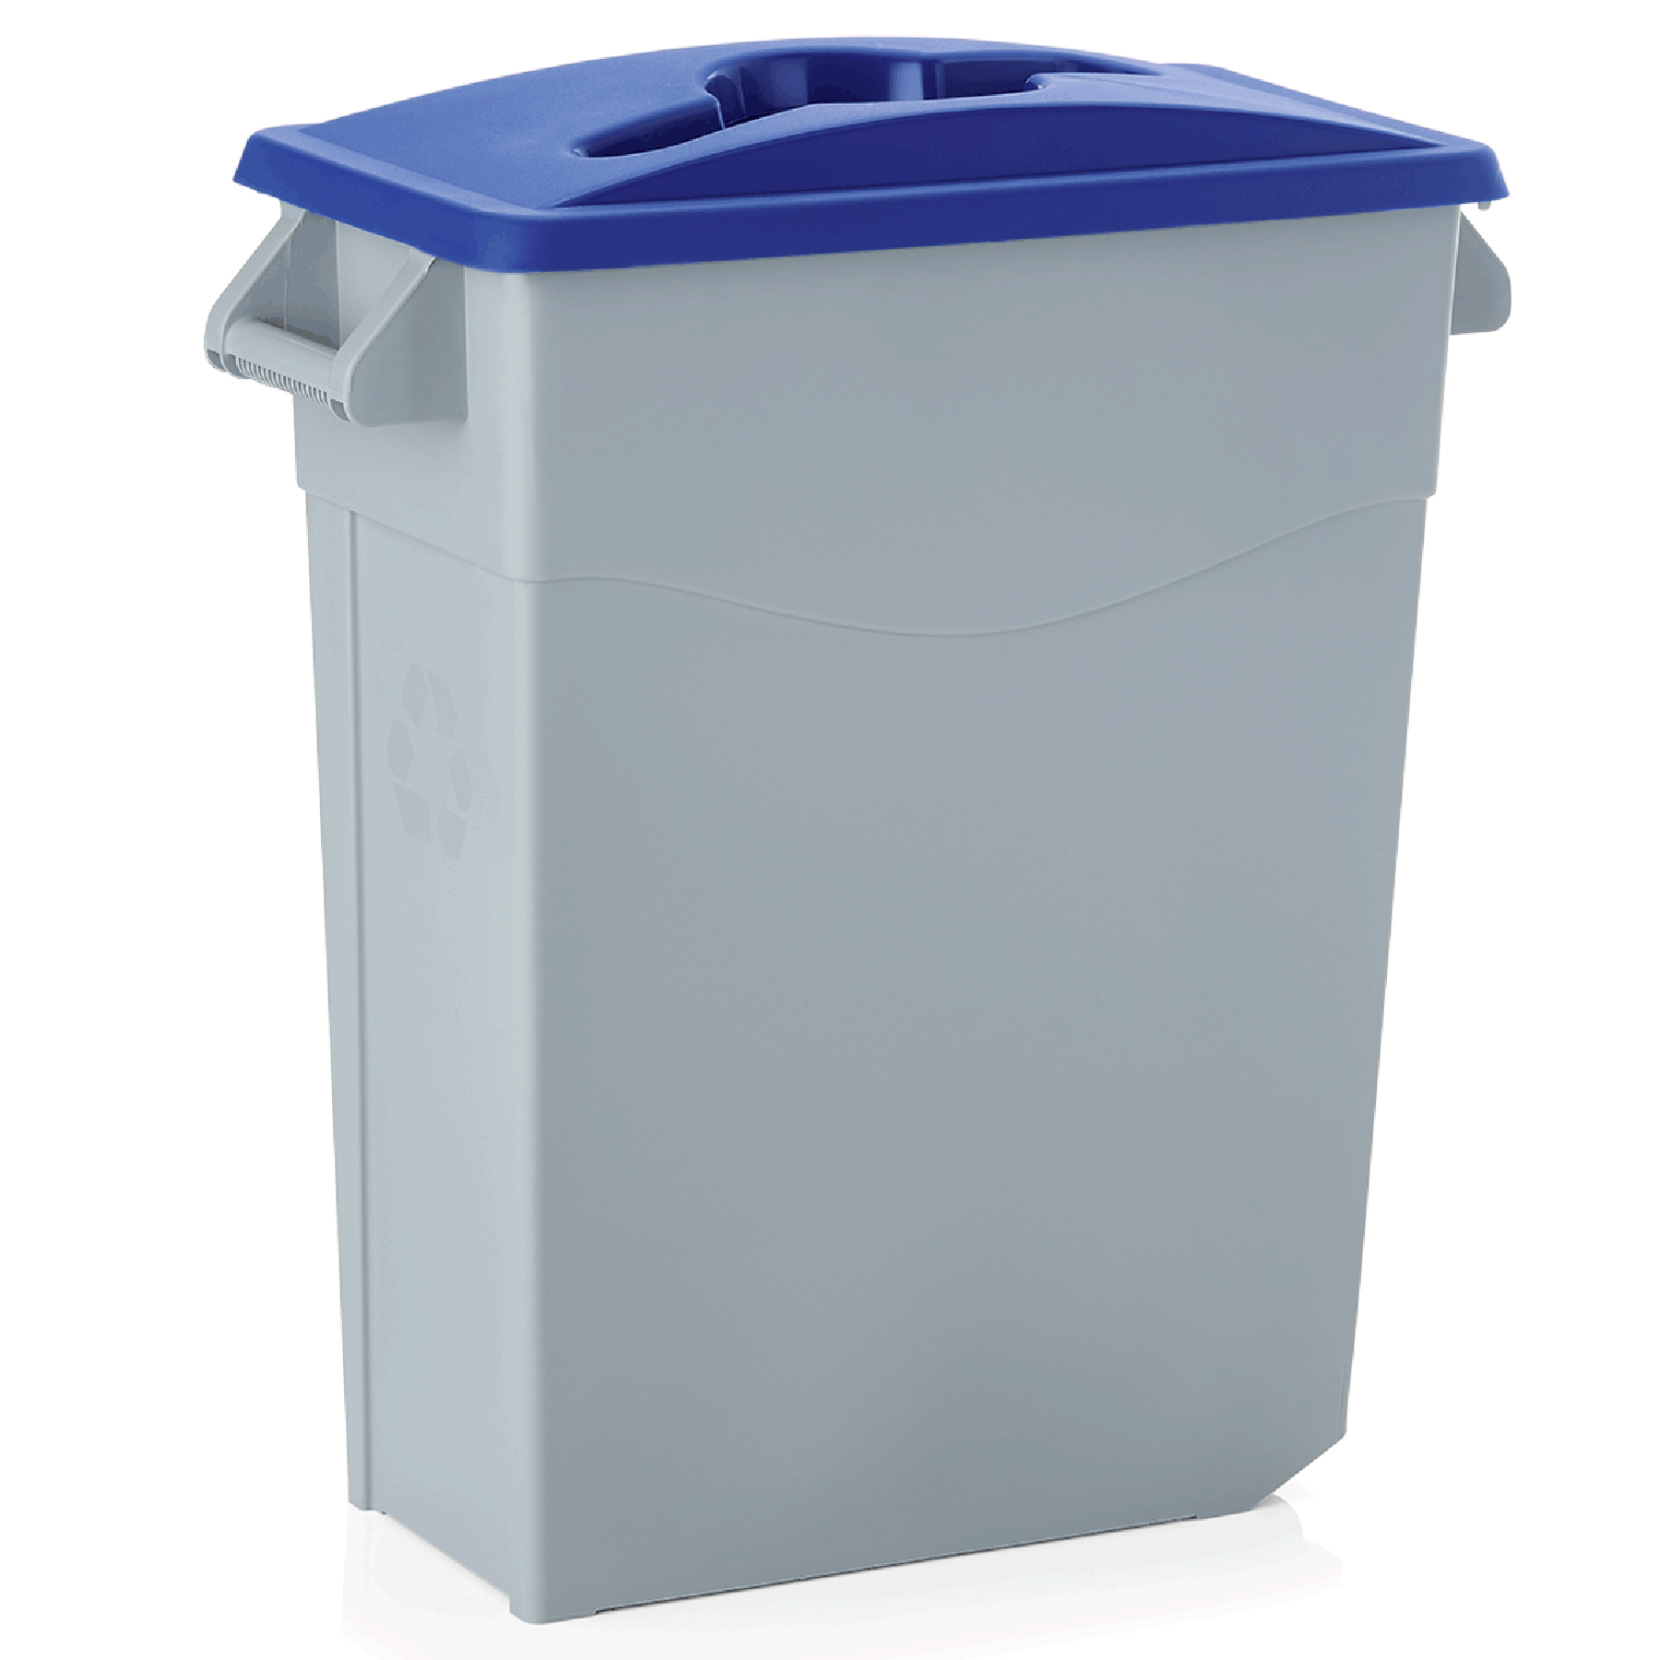 Deckel für Abfallbehälter 9237650, blau, offen, Polypropylen